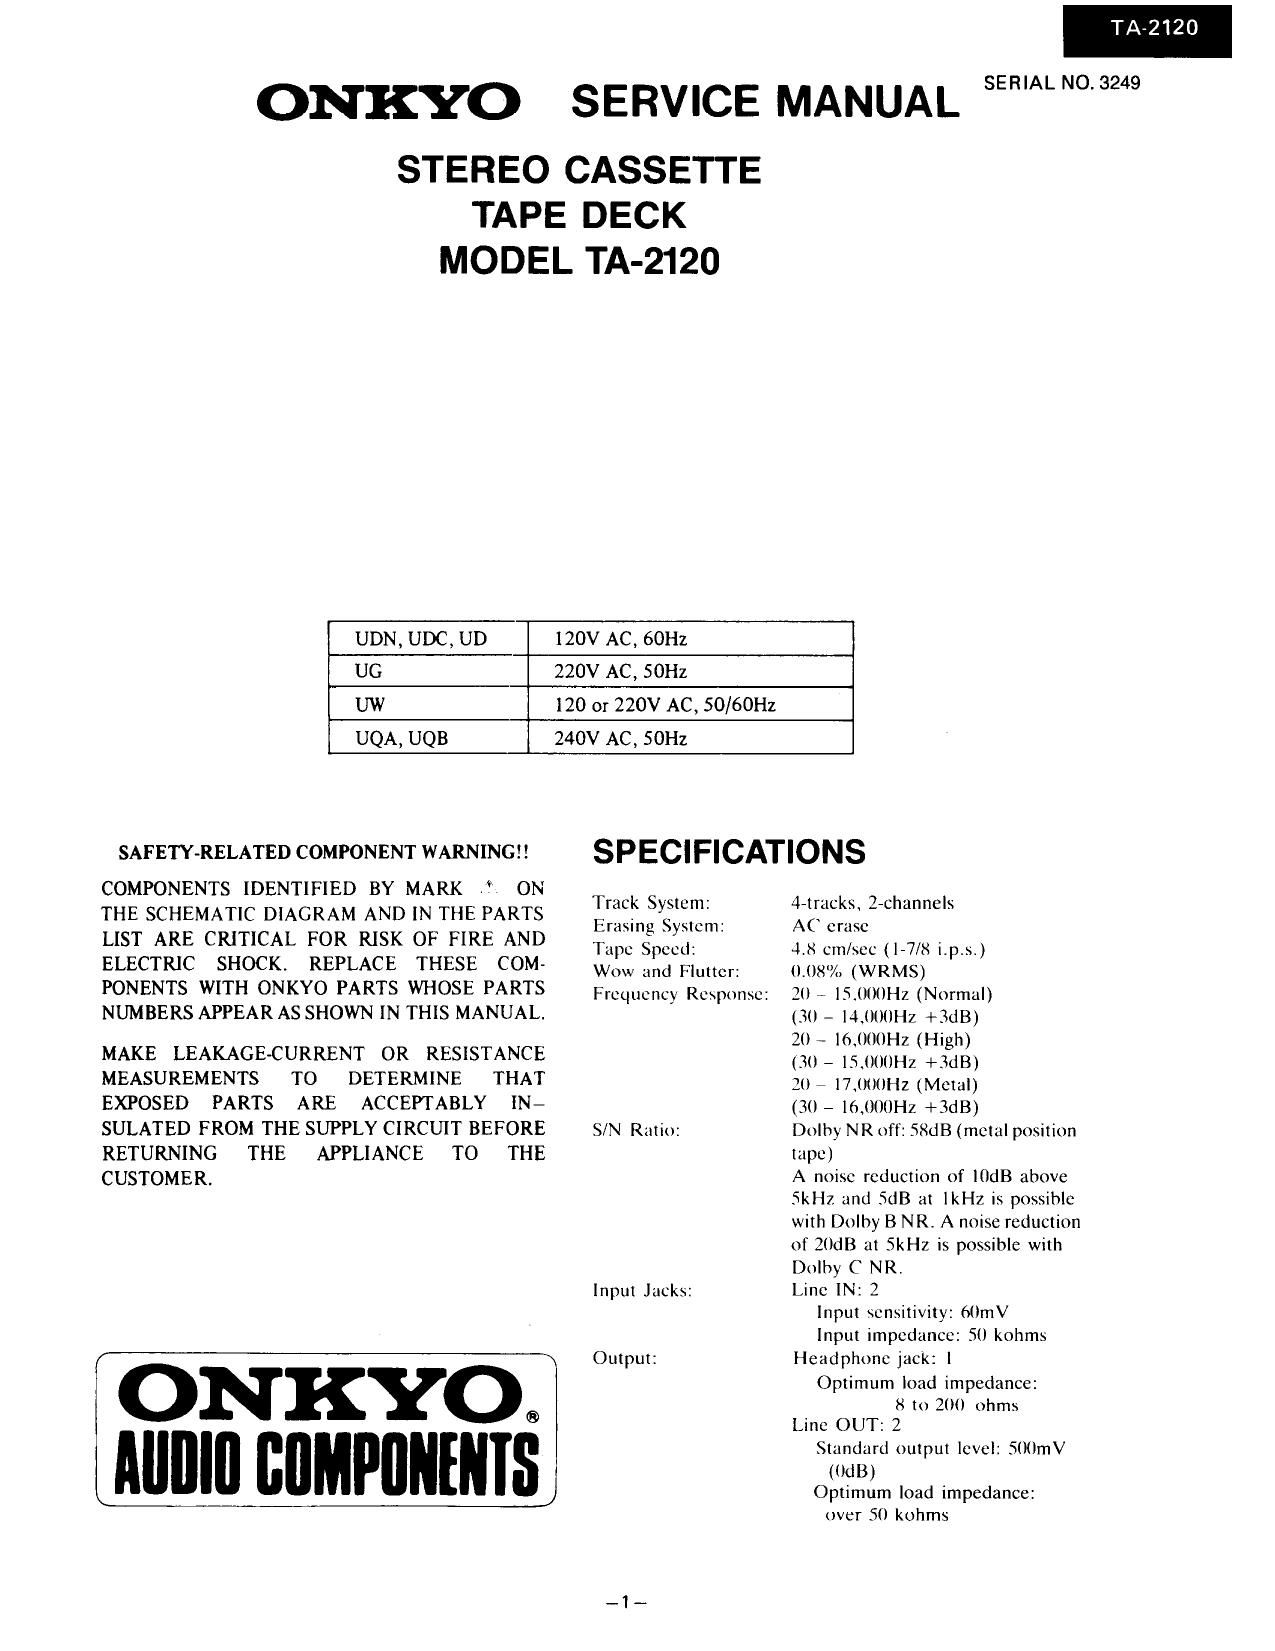 Onkyo TA 2120 Service Manual